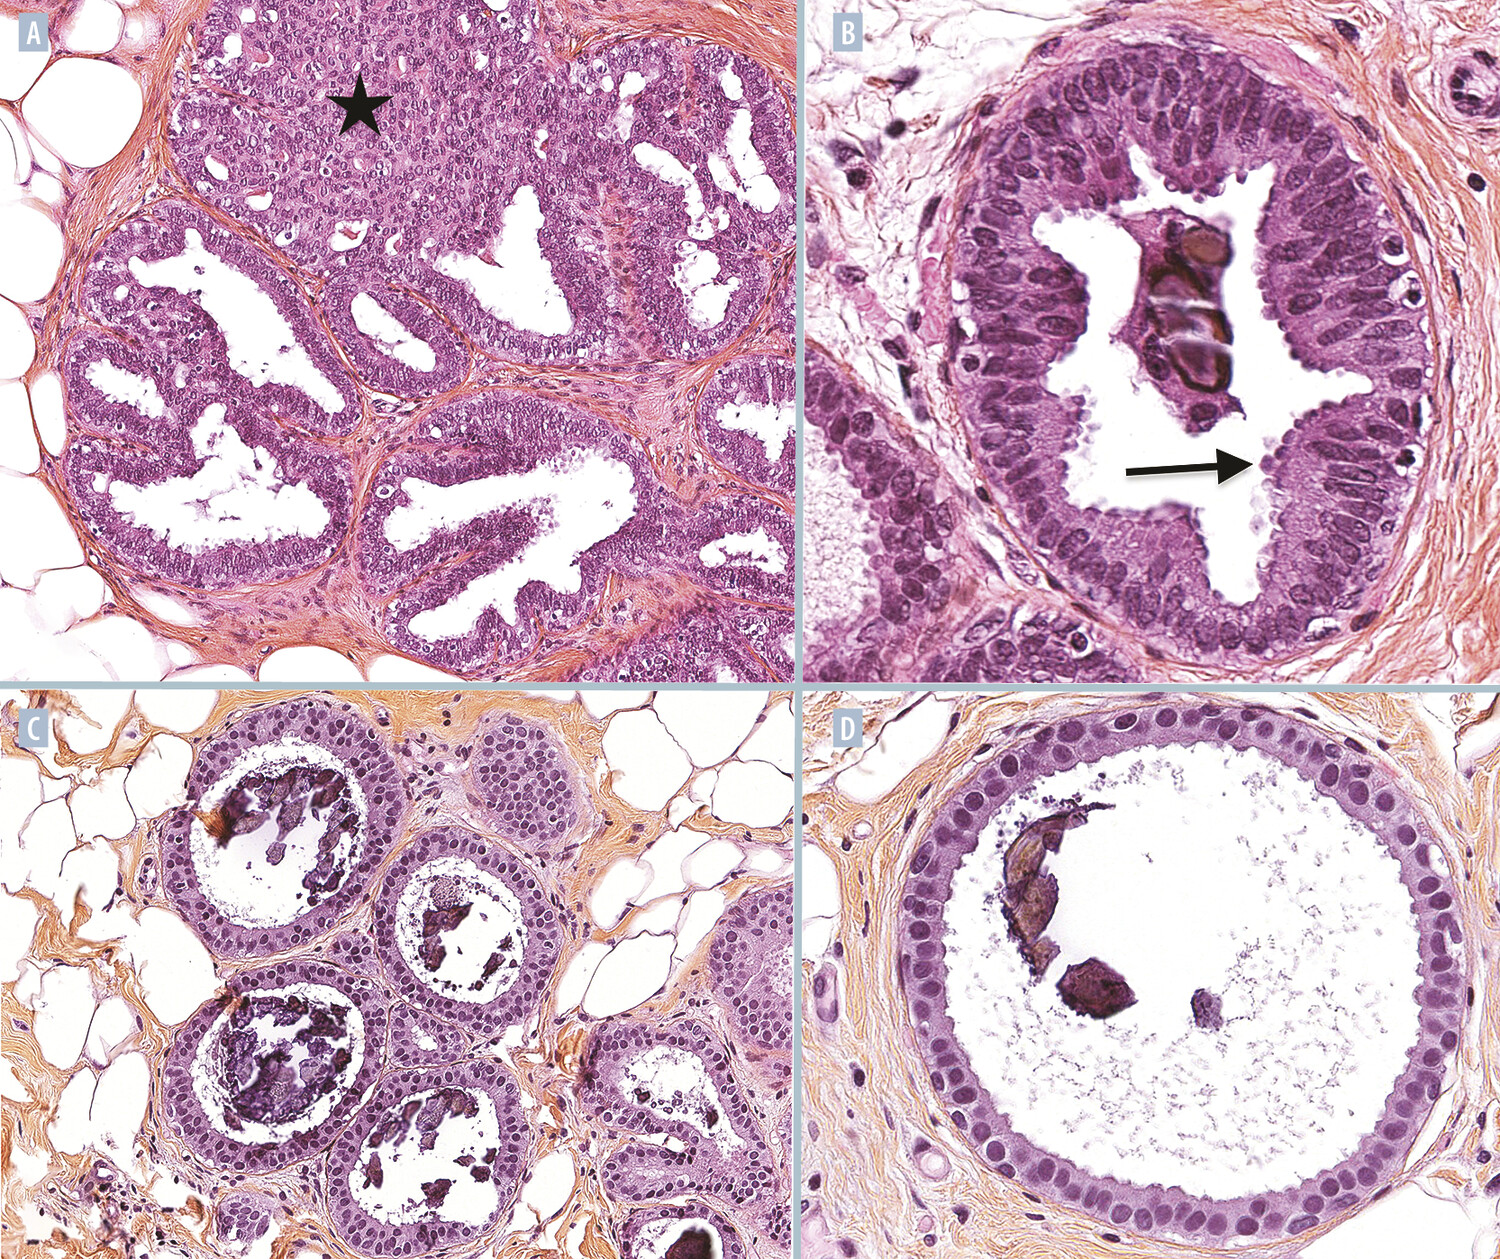 Anatomopathologie des proliférations mammaires intraépithéliales - Figure 2